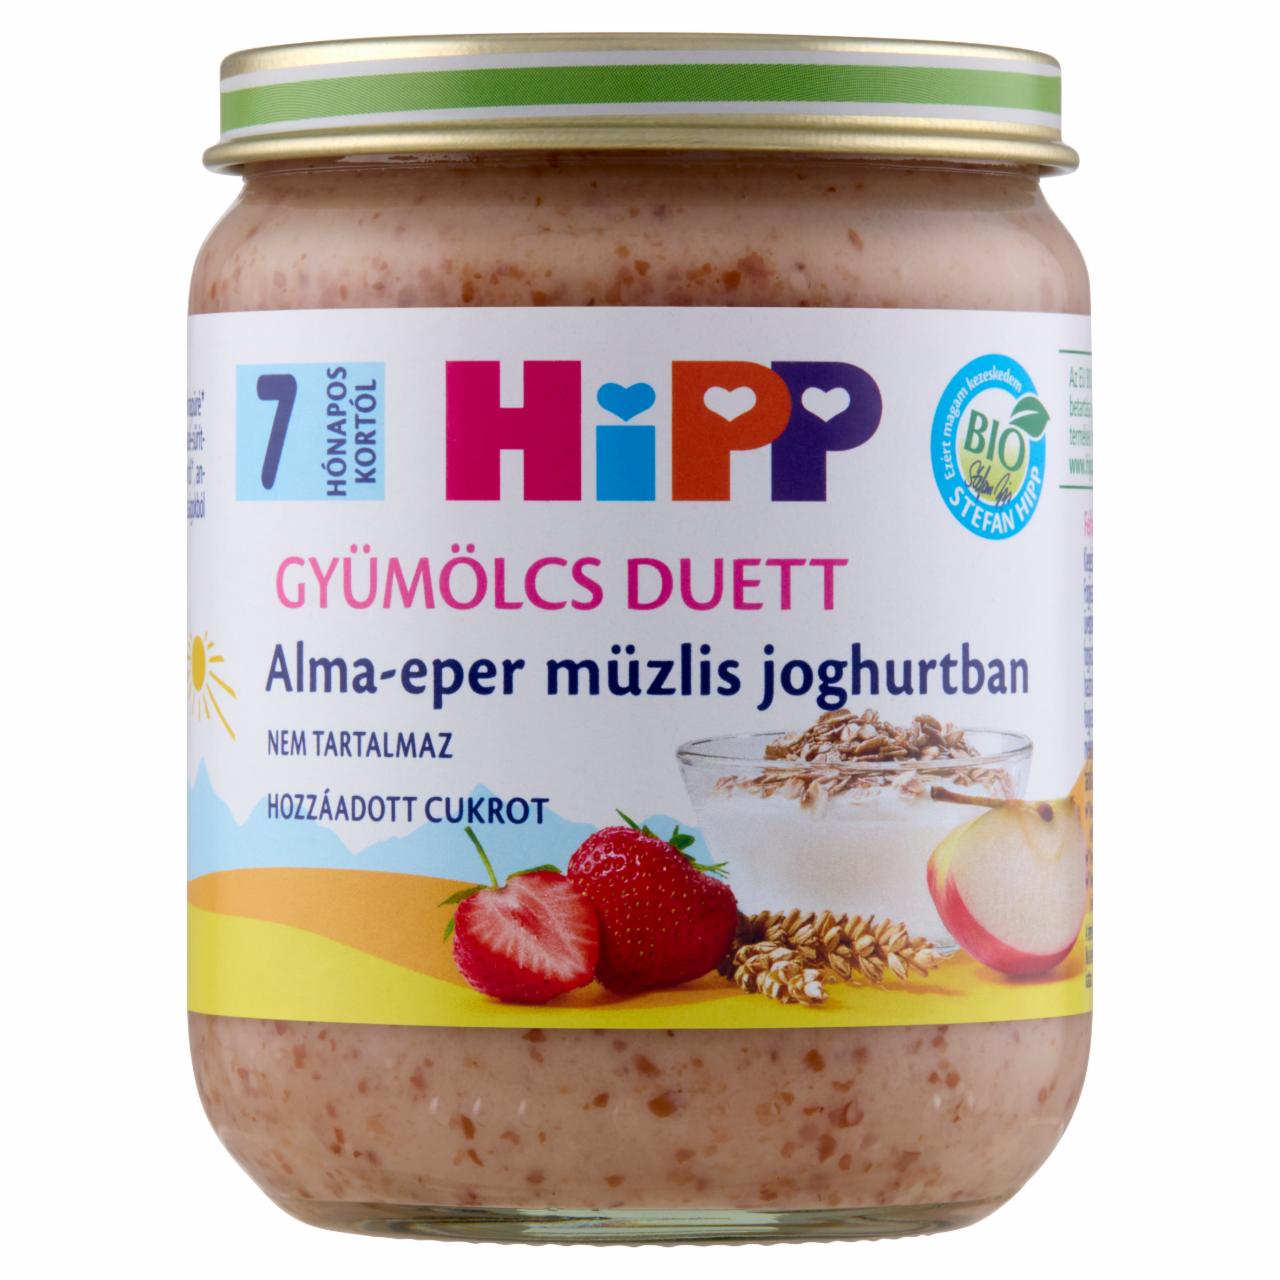 Képek - HiPP Gyümölcs Duett BIO alma-eper müzlis joghurtban bébidesszert 7 hónapos kortól 160 g